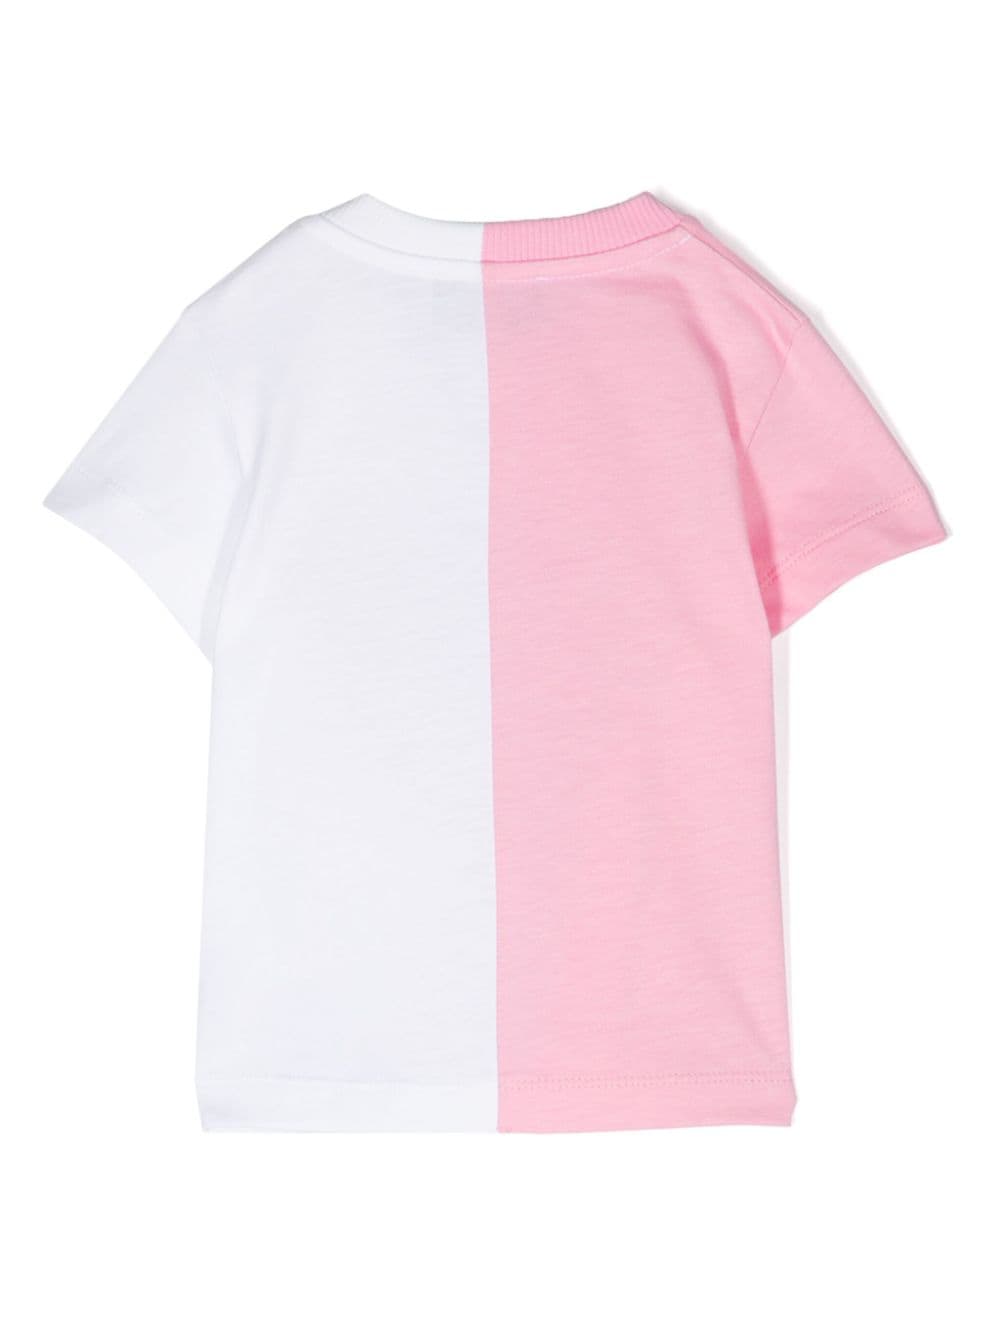 T-shirt bianca e rosa per neonata con logo